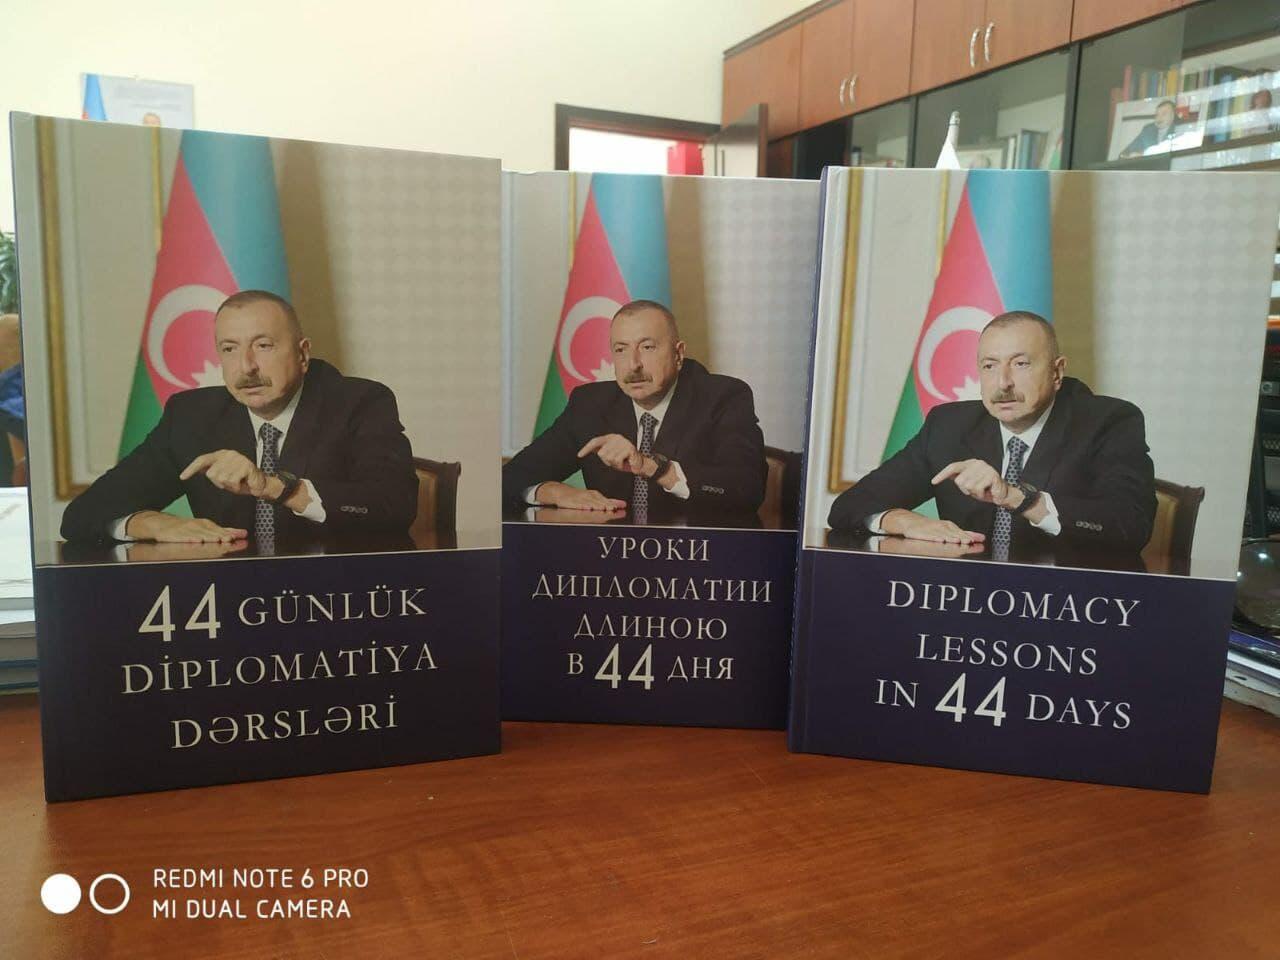 44 günlük diplomatiya dərsləri